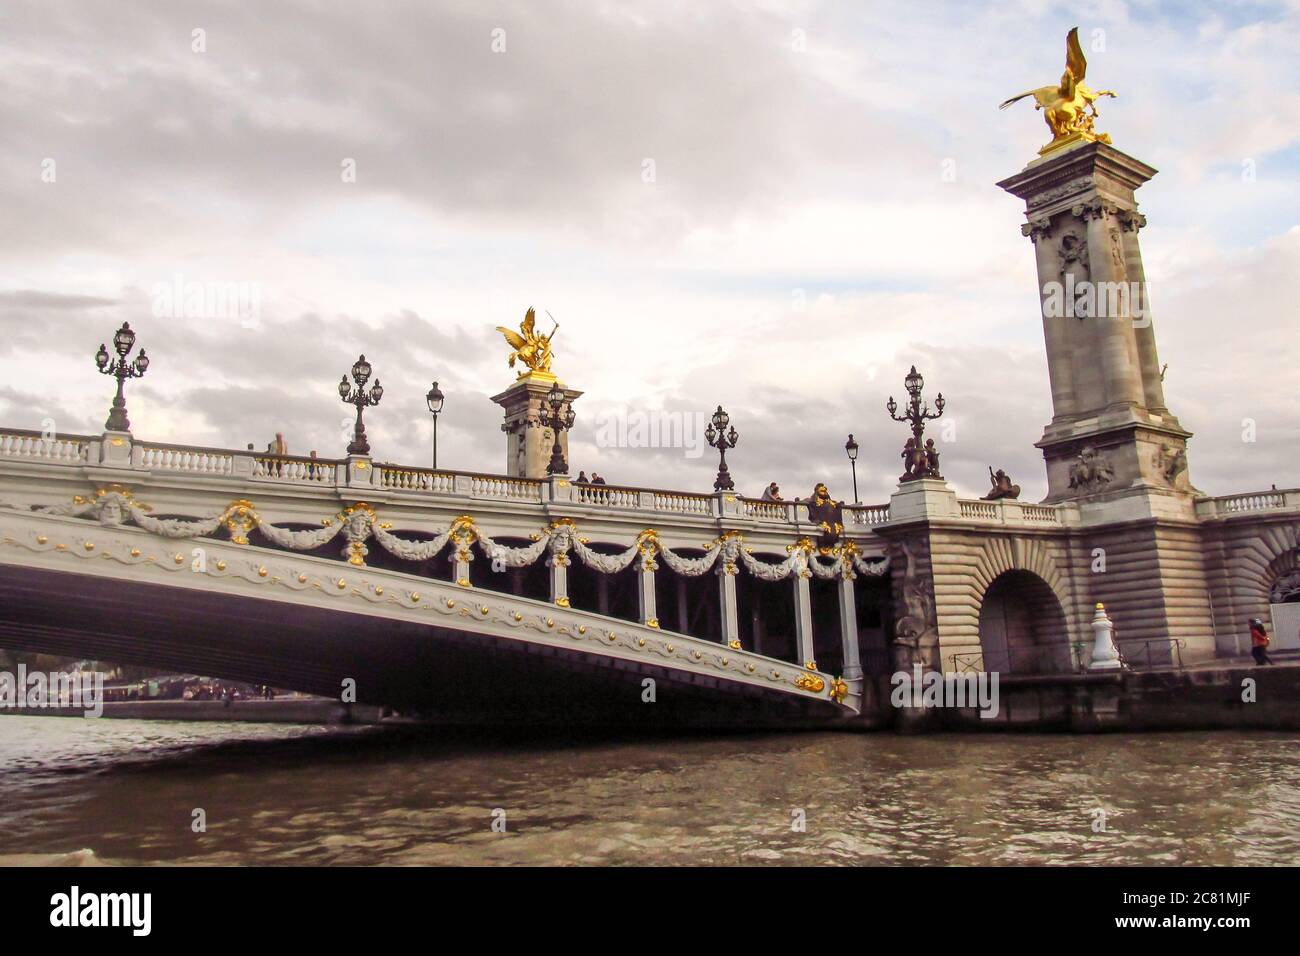 Le pont Alexandre iii (Pont Alexandre iii) en fin d'après-midi, vu du Ferry sur la seine, photographié à Paris, France Banque D'Images